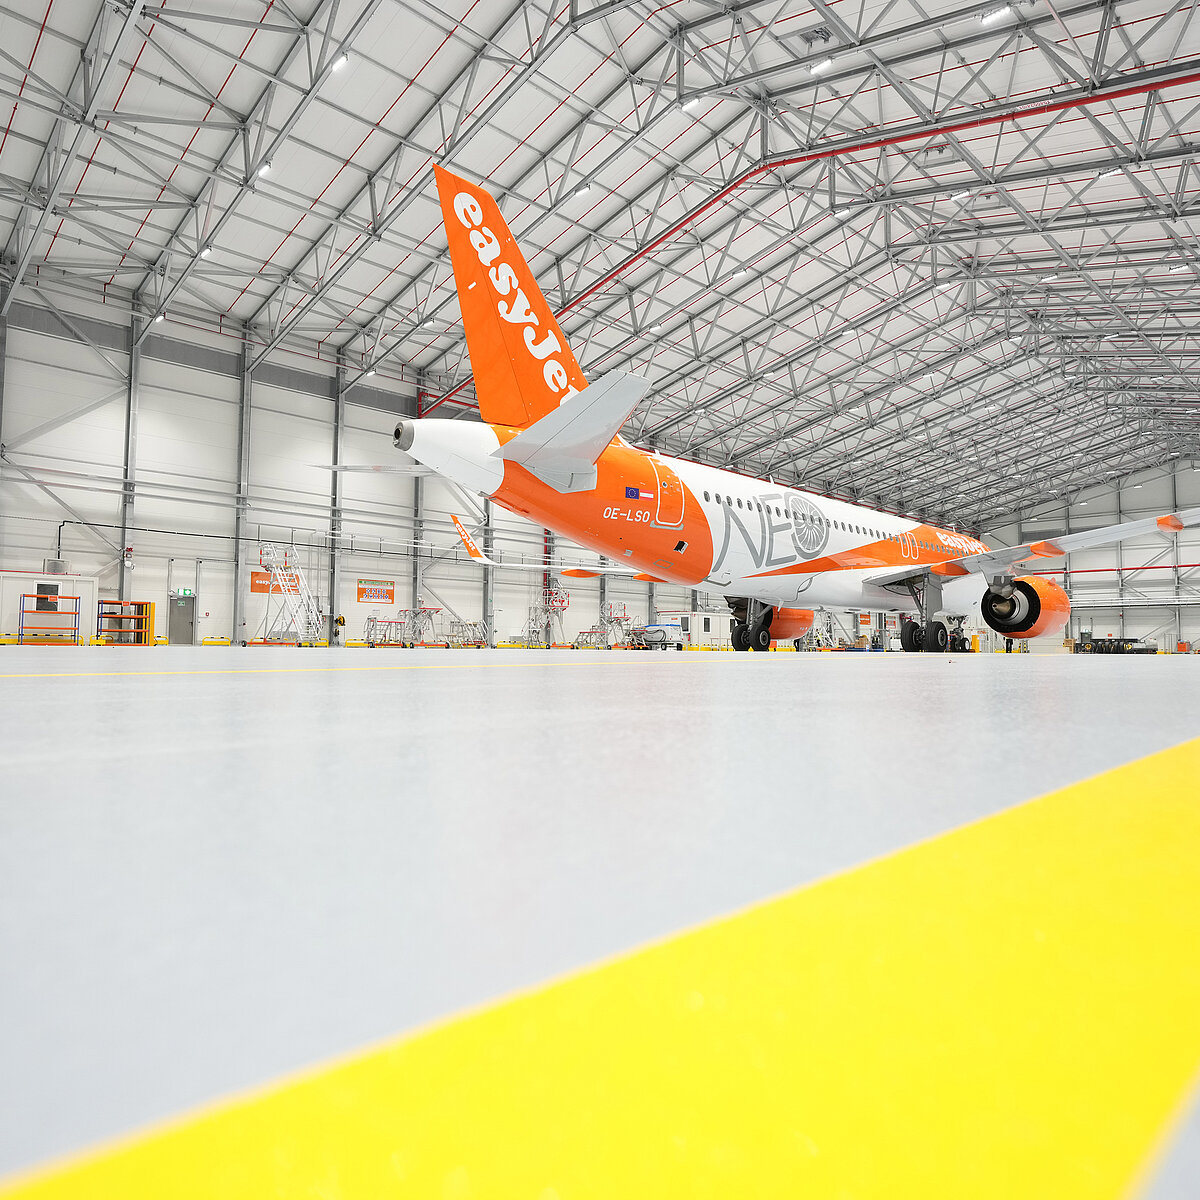 EasyJet-Wartungshangar bietet Platz für vier Flugzeuge bis zu einer Größe des Airbus A321